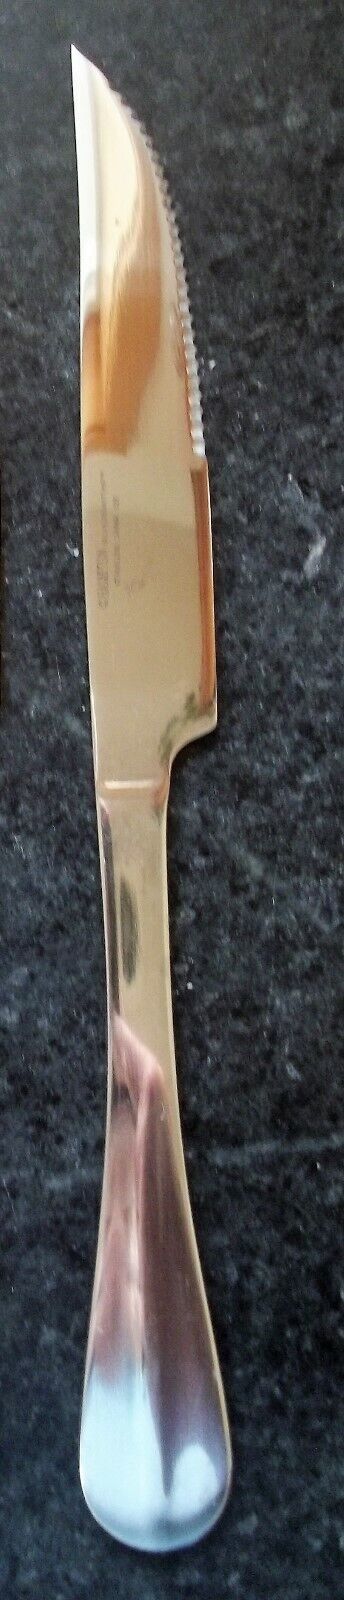 Hampton Silversmiths Lexington Mirror stainless steak knife    